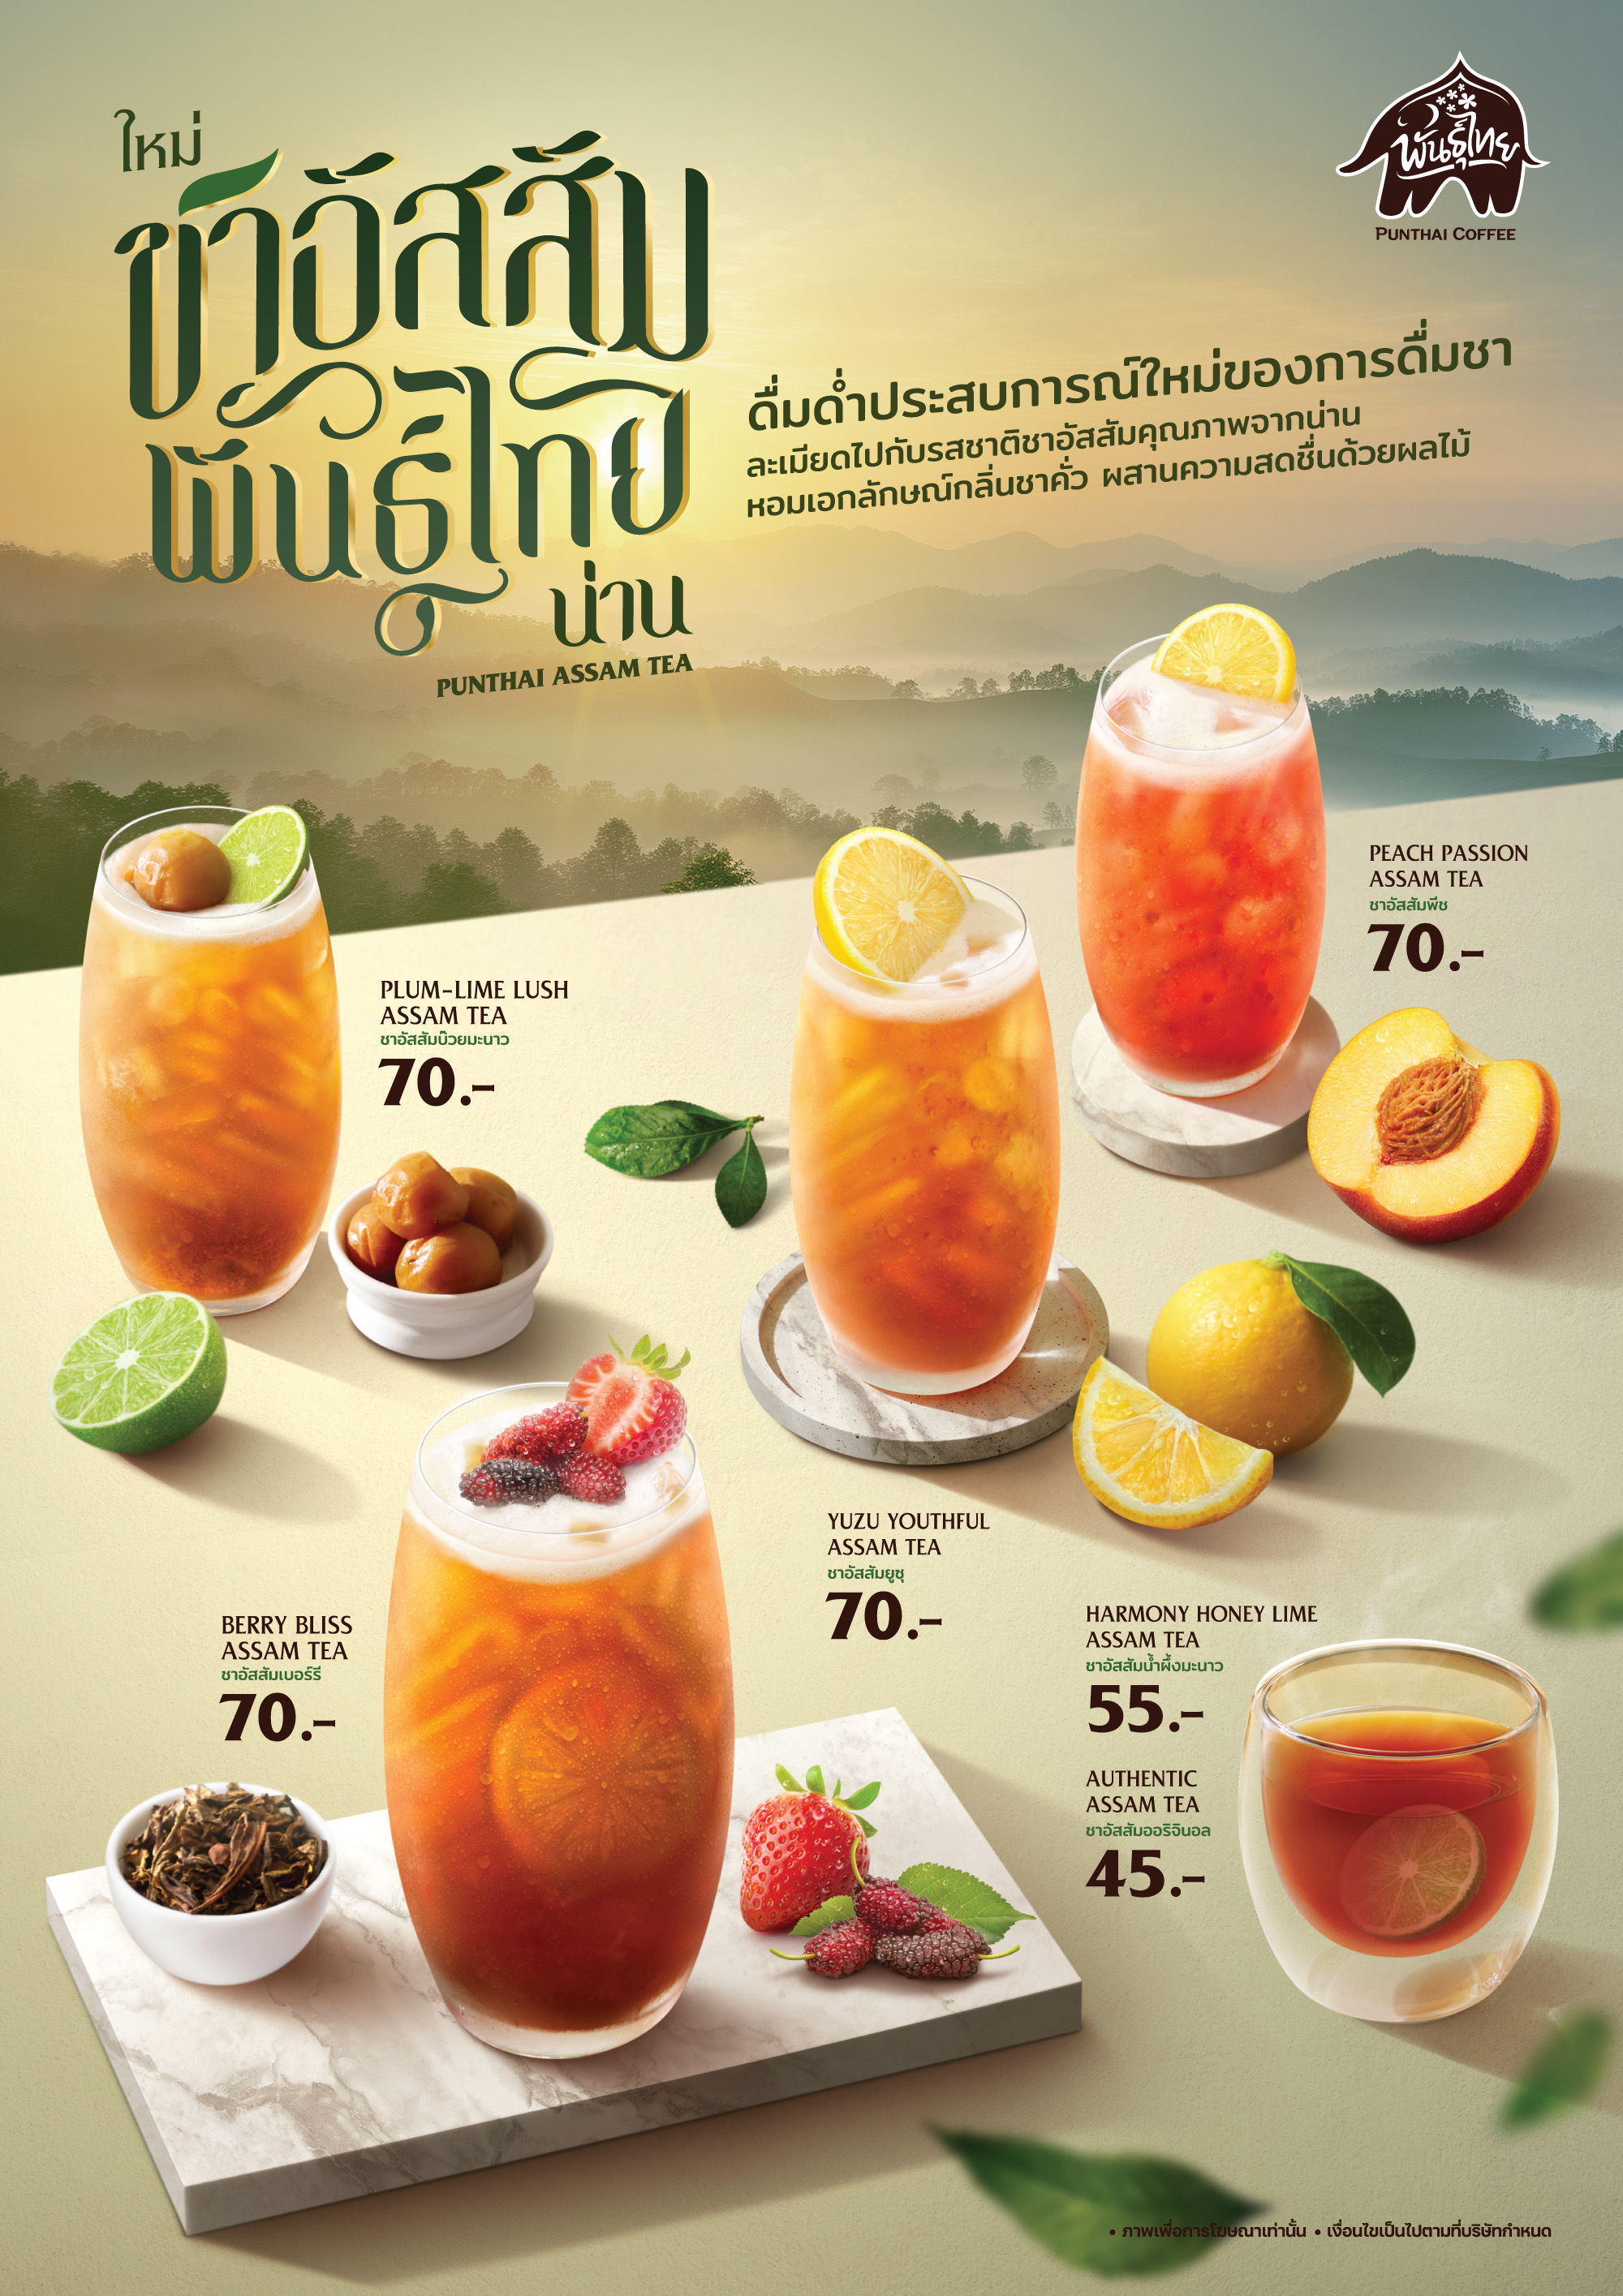 ชาอัสสัมพันธุ์ไทย